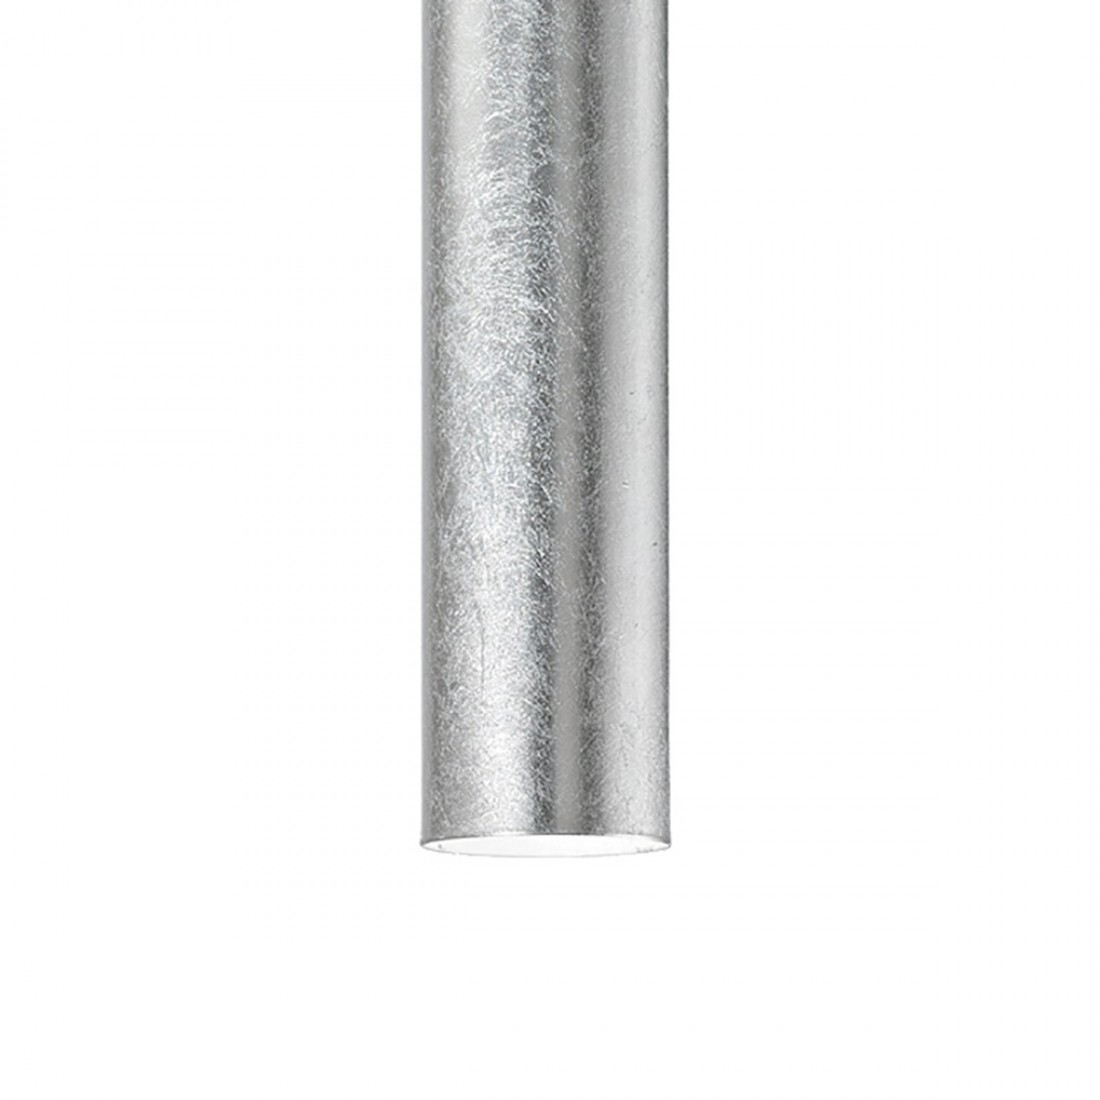 Suspension en métal cylindrique noir ou blanc mat., GU10, led.